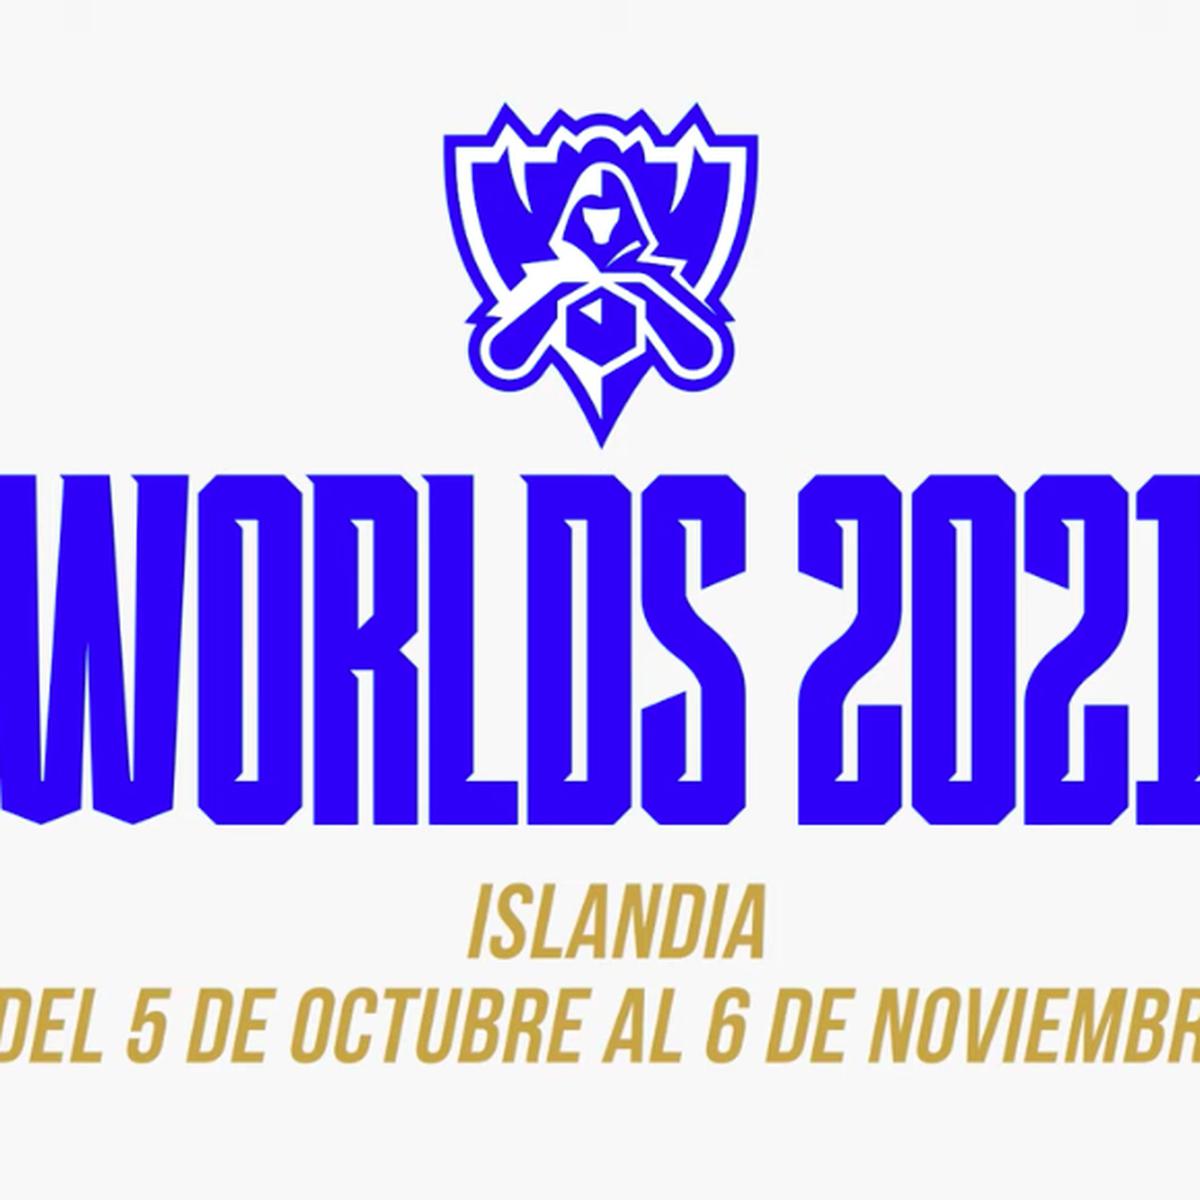 Campeonato Mundial 2021 de League of Legends será transferido da